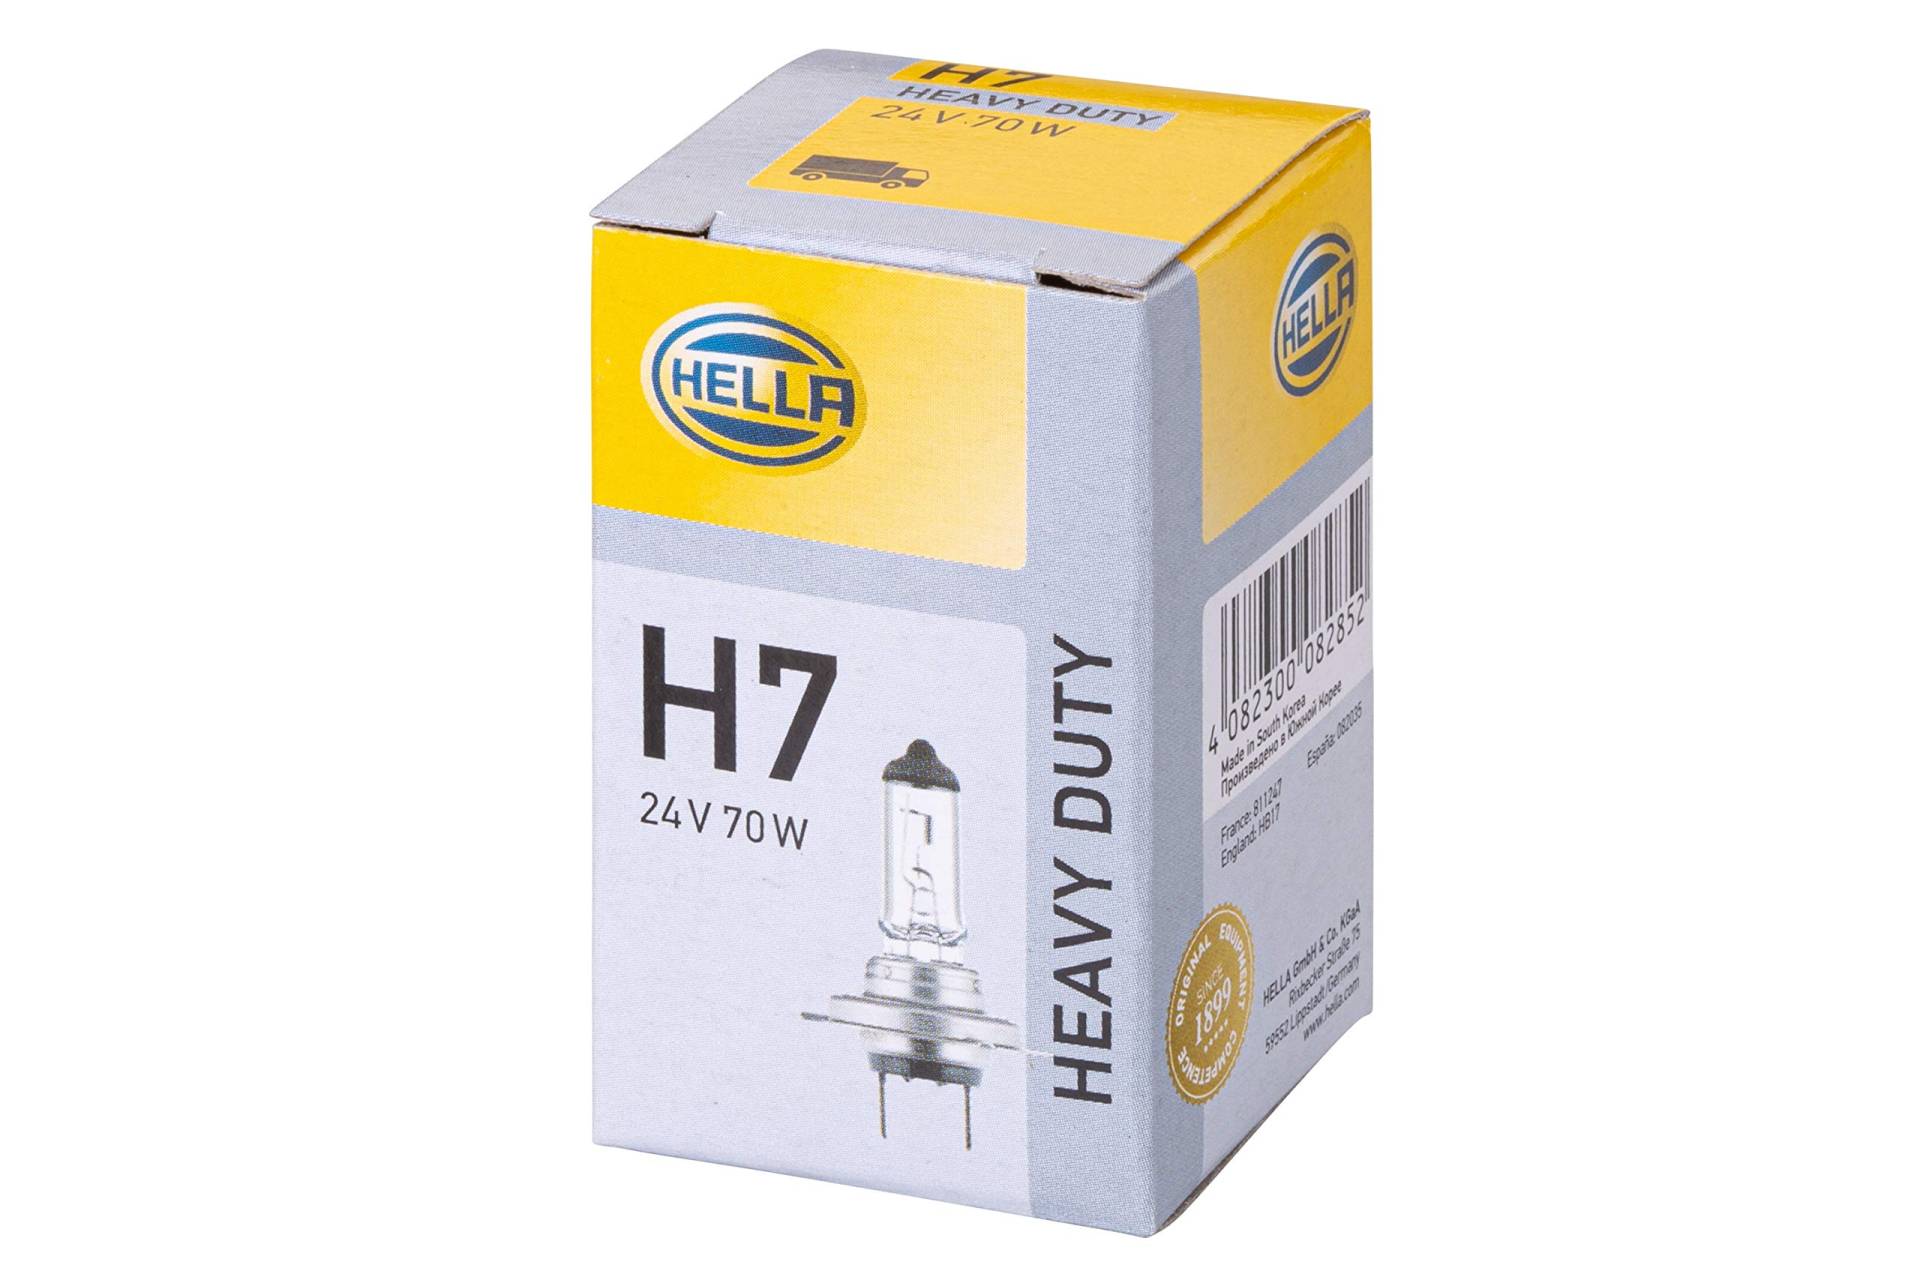 HELLA - Glühlampe - H7 - Heavy Duty - 24V - 70W - Sockelausführung: PX26d - Schachtel - Menge: 1 - 8GH 007 157-241, Karton von Hella